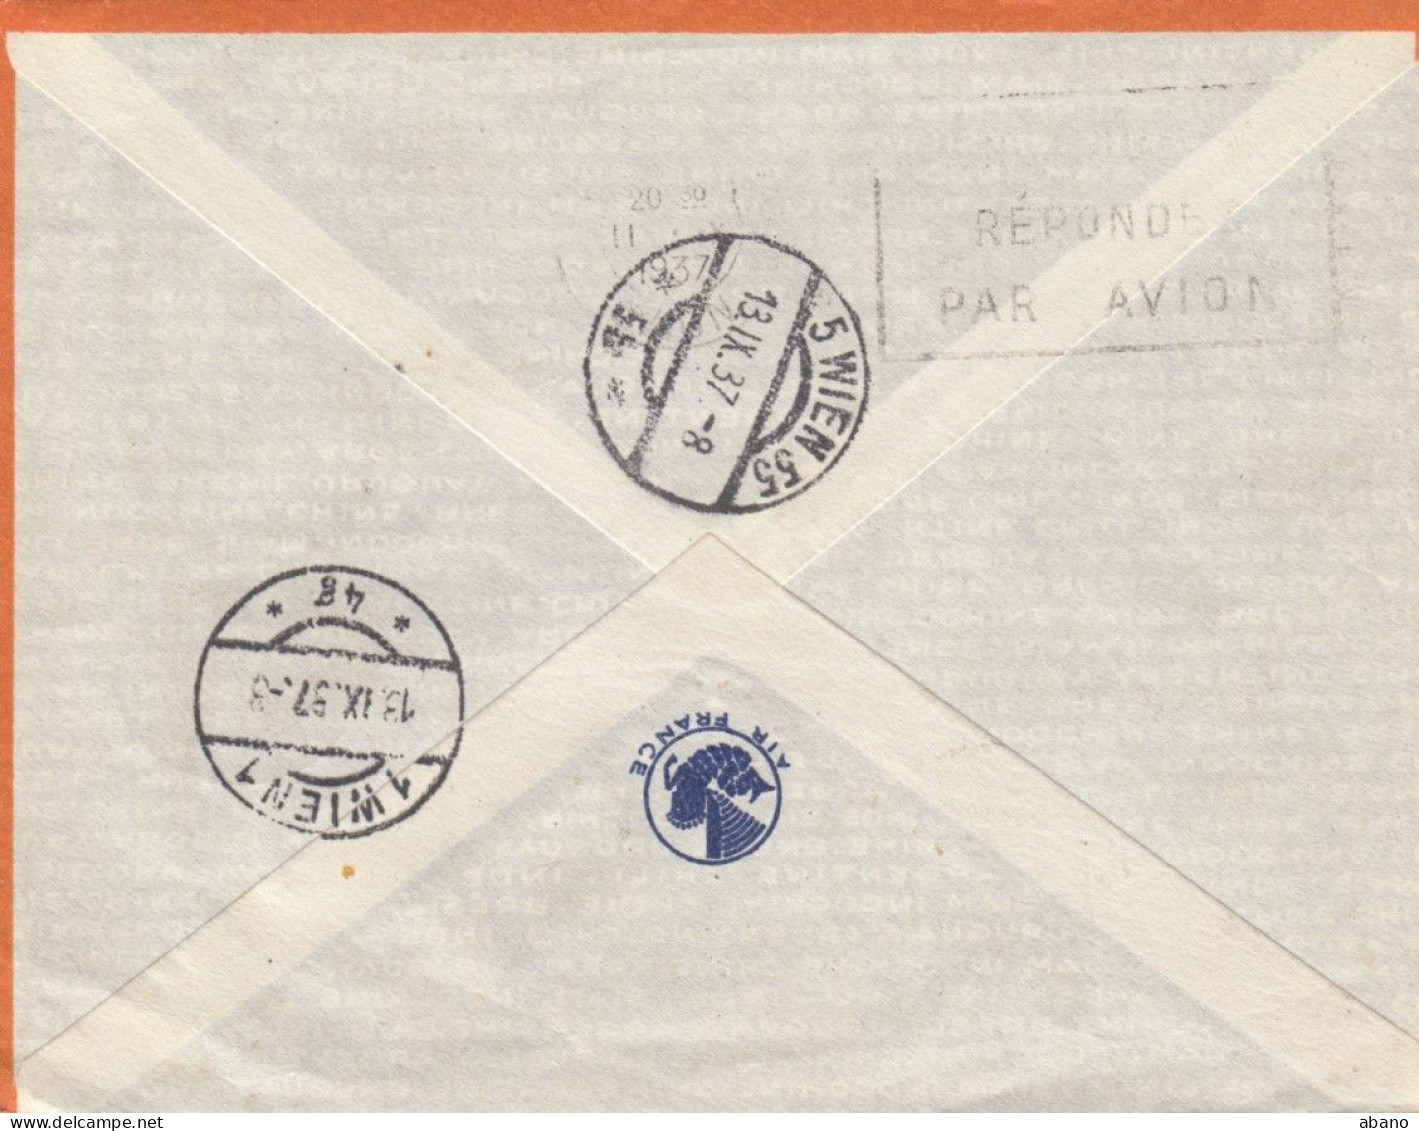 Frankreich 1936 Par Avion Flugpost 85 C. + 1,50 F. Brief EXPOSITION DE 1937 PARIS Nach Wien !!! - Covers & Documents